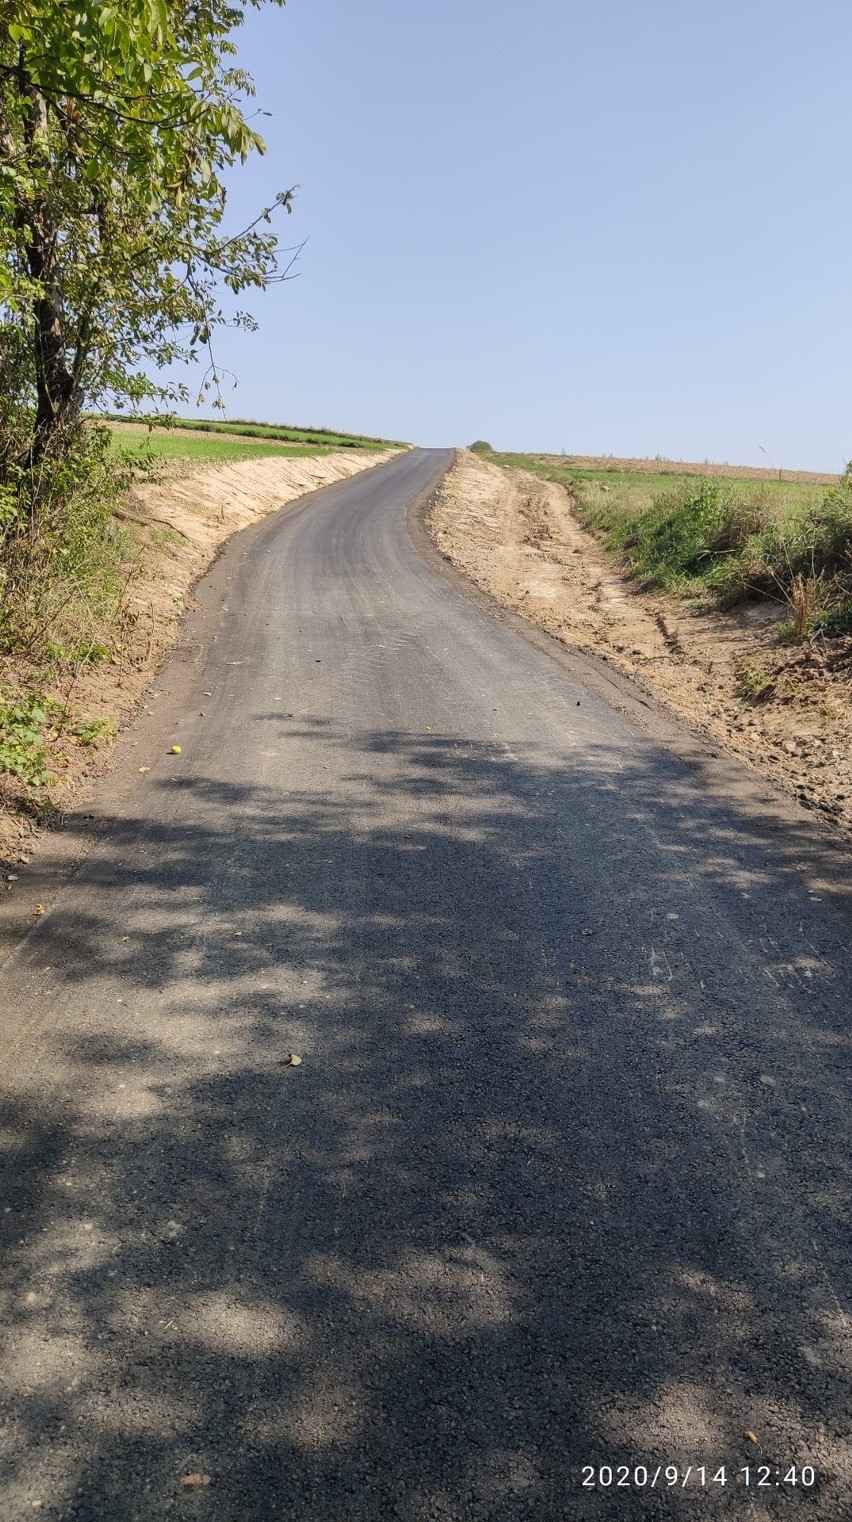 W gminie Słomniki wyremontowano sześć dróg rolniczych. Będzie łatwiej dojechać do pól